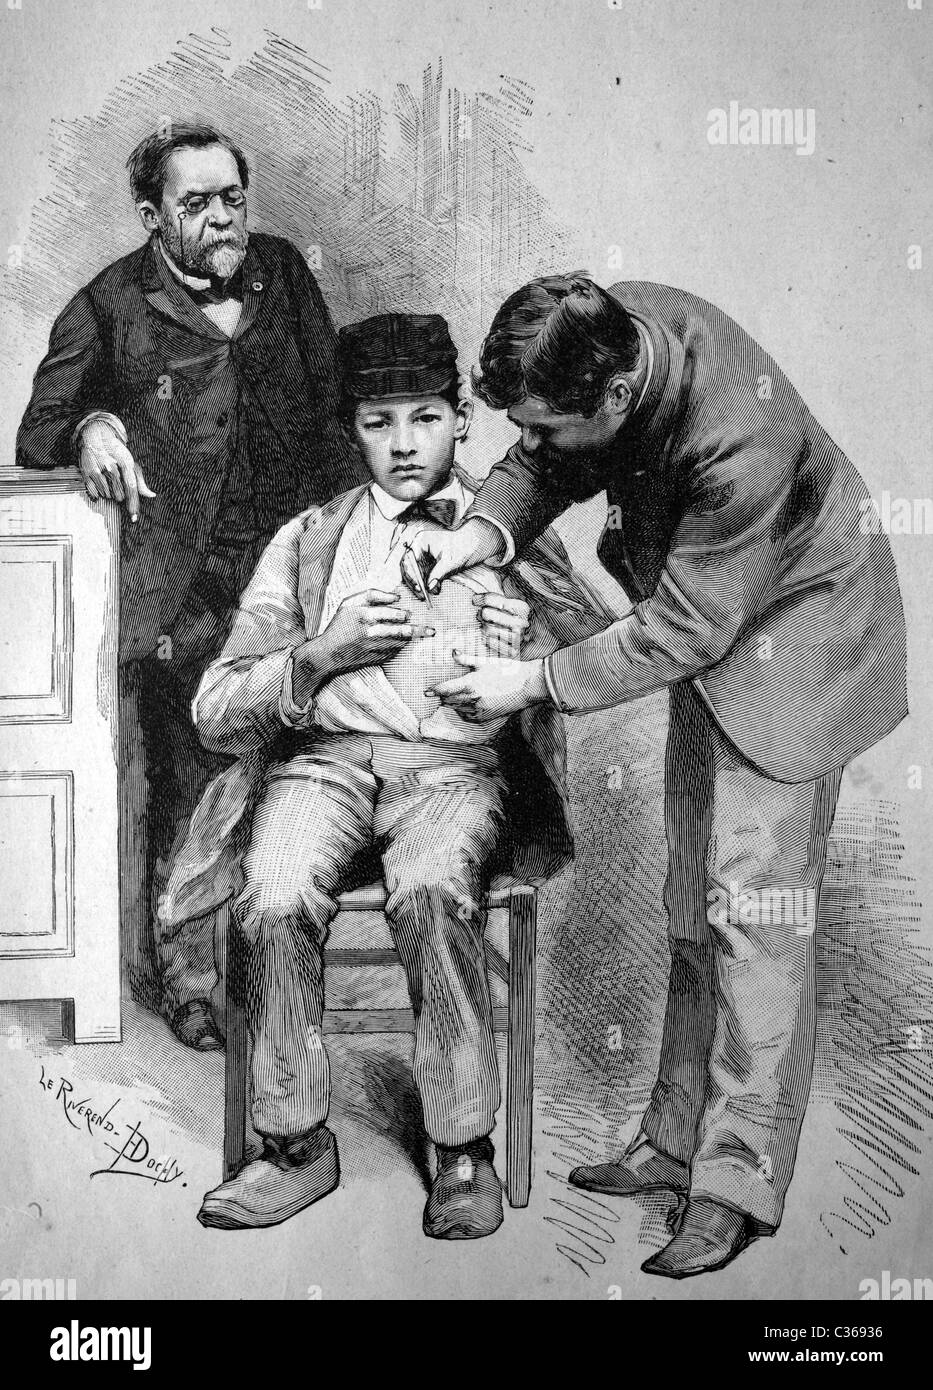 La vaccination contre la rage par le professeur Pasteur à Paris, France illustration historique, vers 1886 Banque D'Images